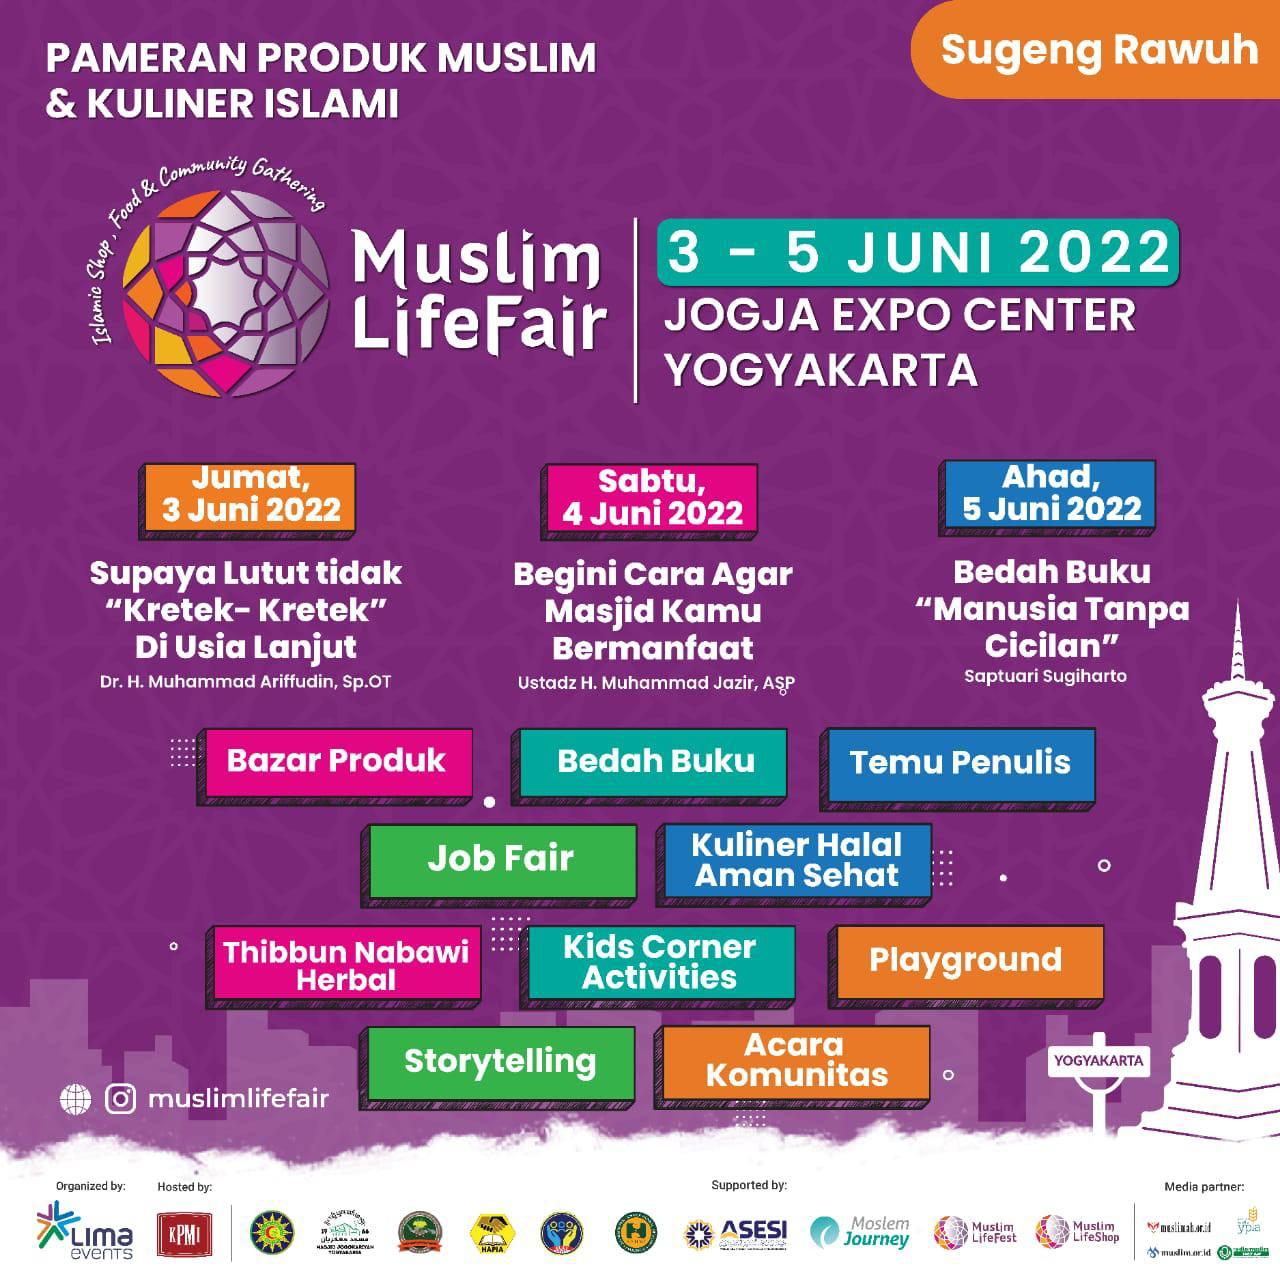 Muslim LifeFair 2022 - Yogyakarta